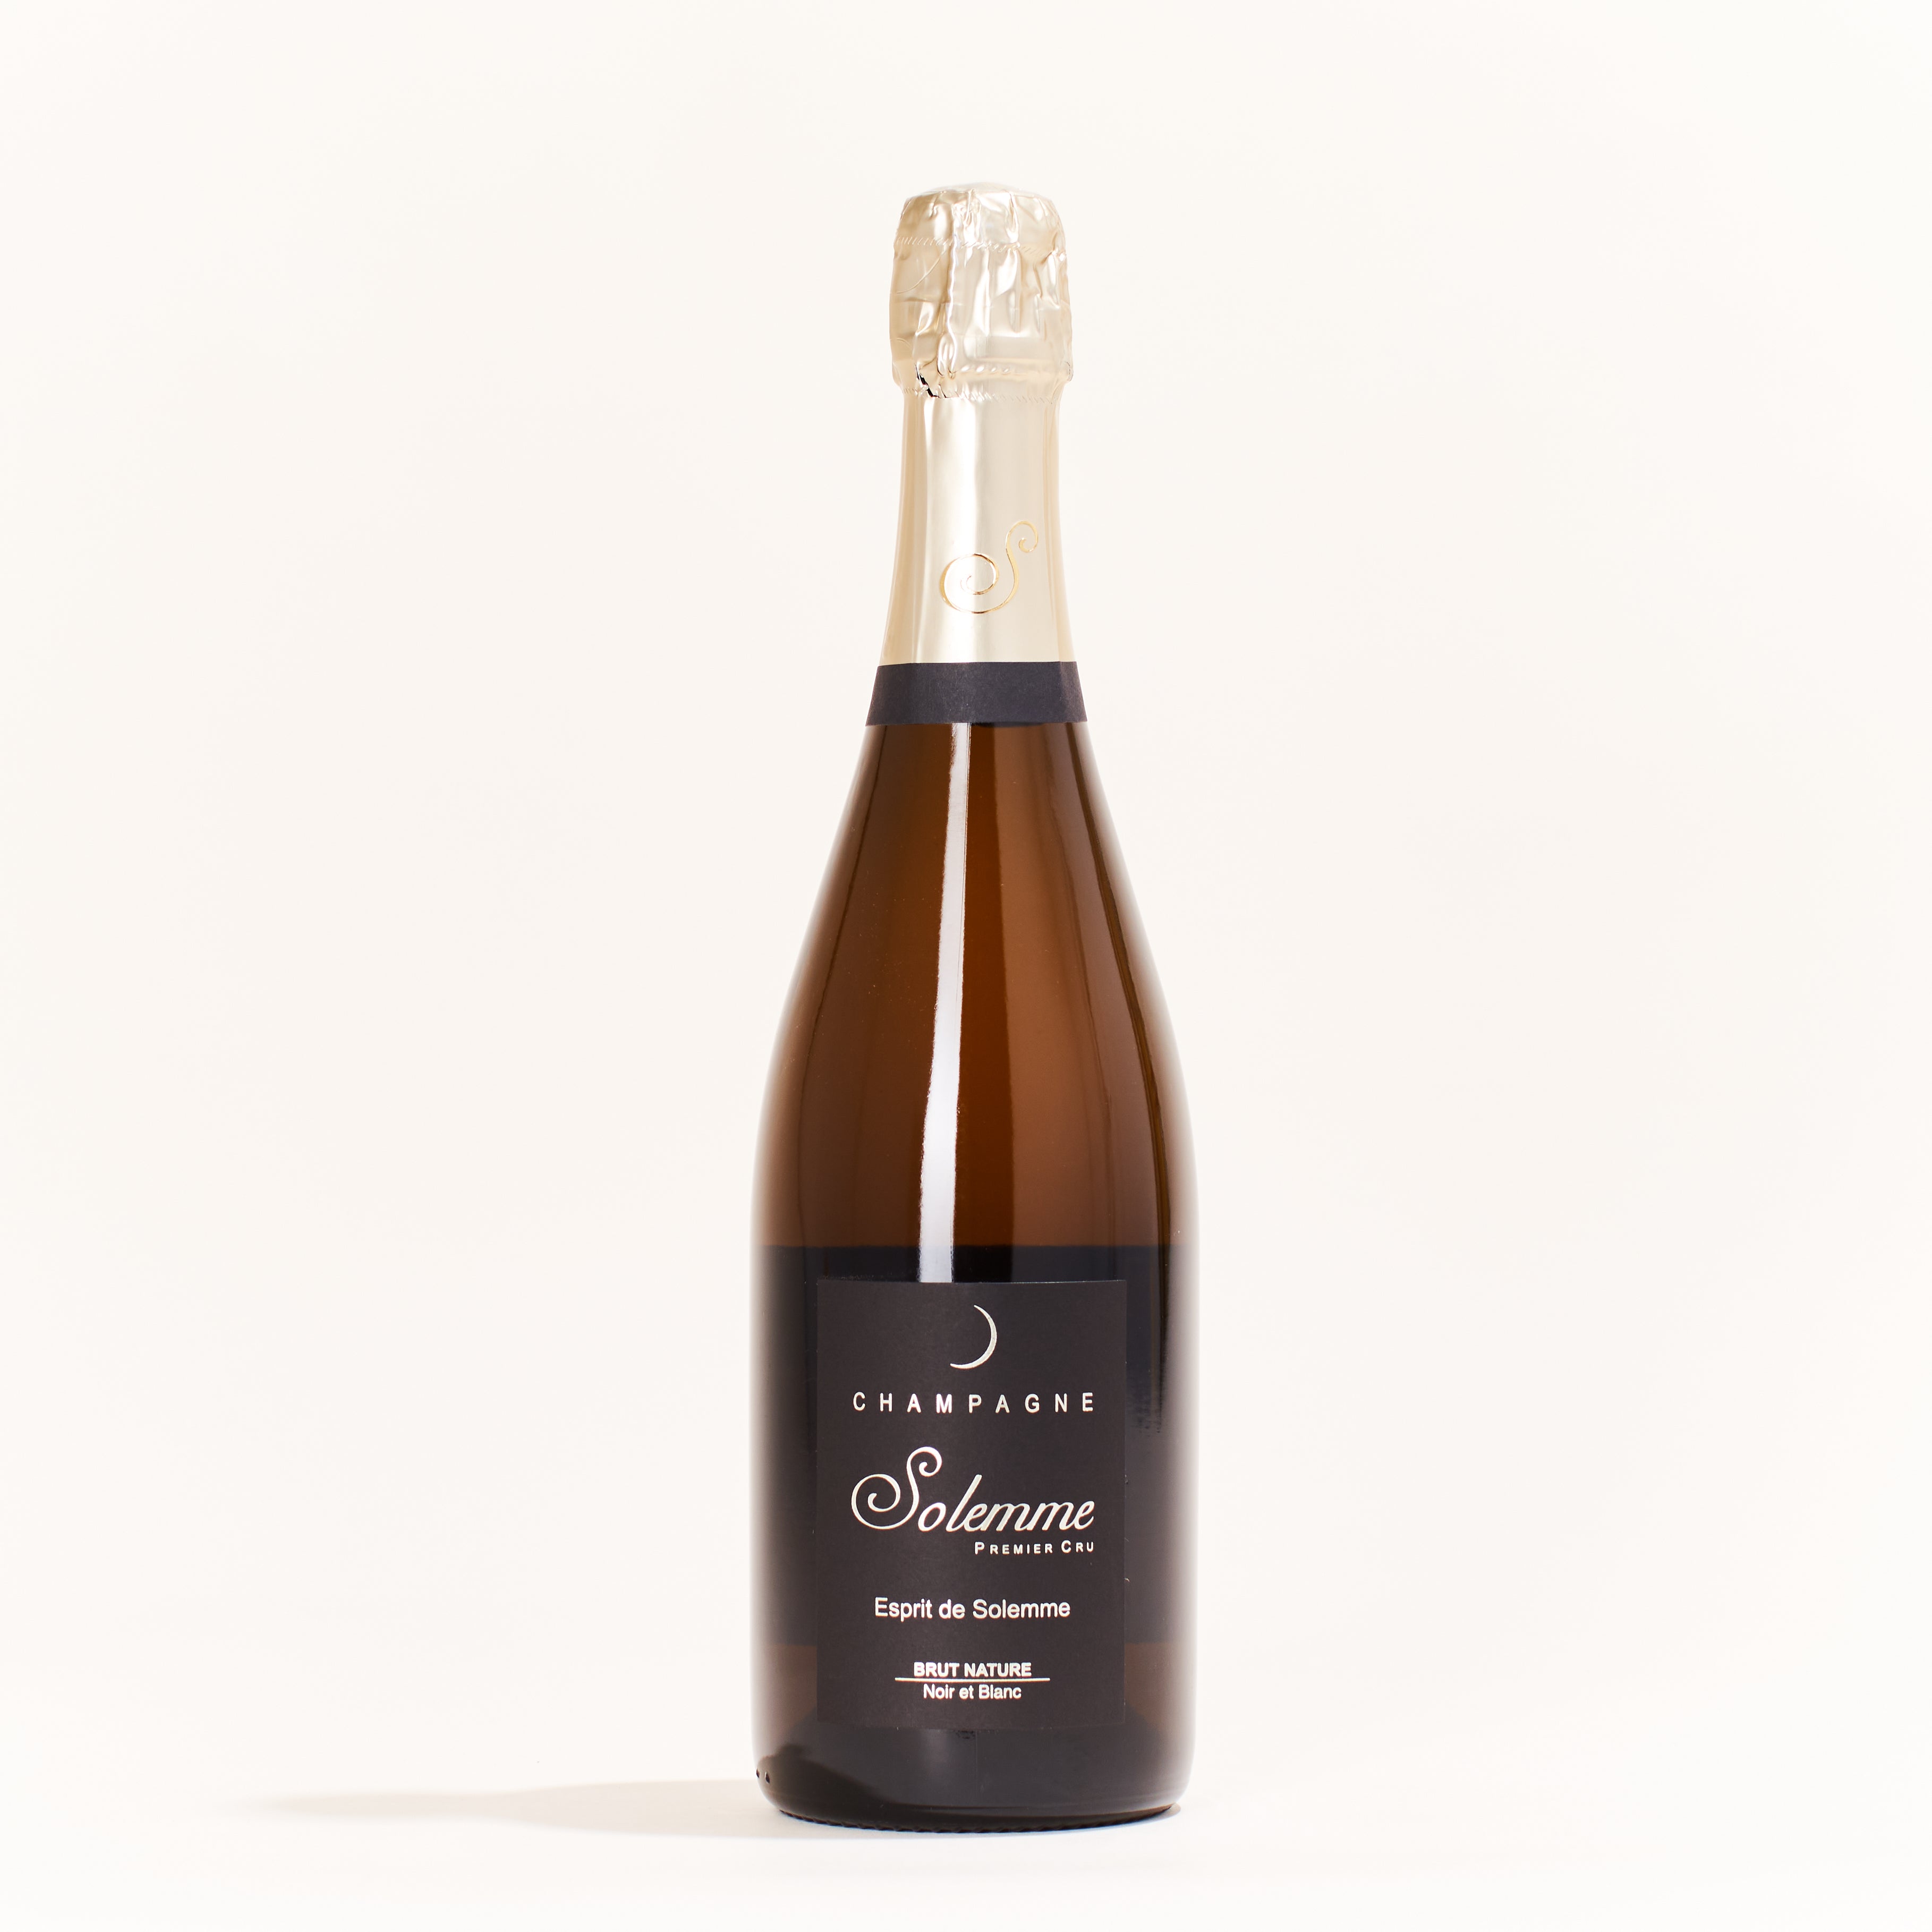 Solemme-Esprit-1er-Cru-Chardonnay,-Pinot-Noir--Pinot-Meunier-natural-sparkling-wine-Champagne-France